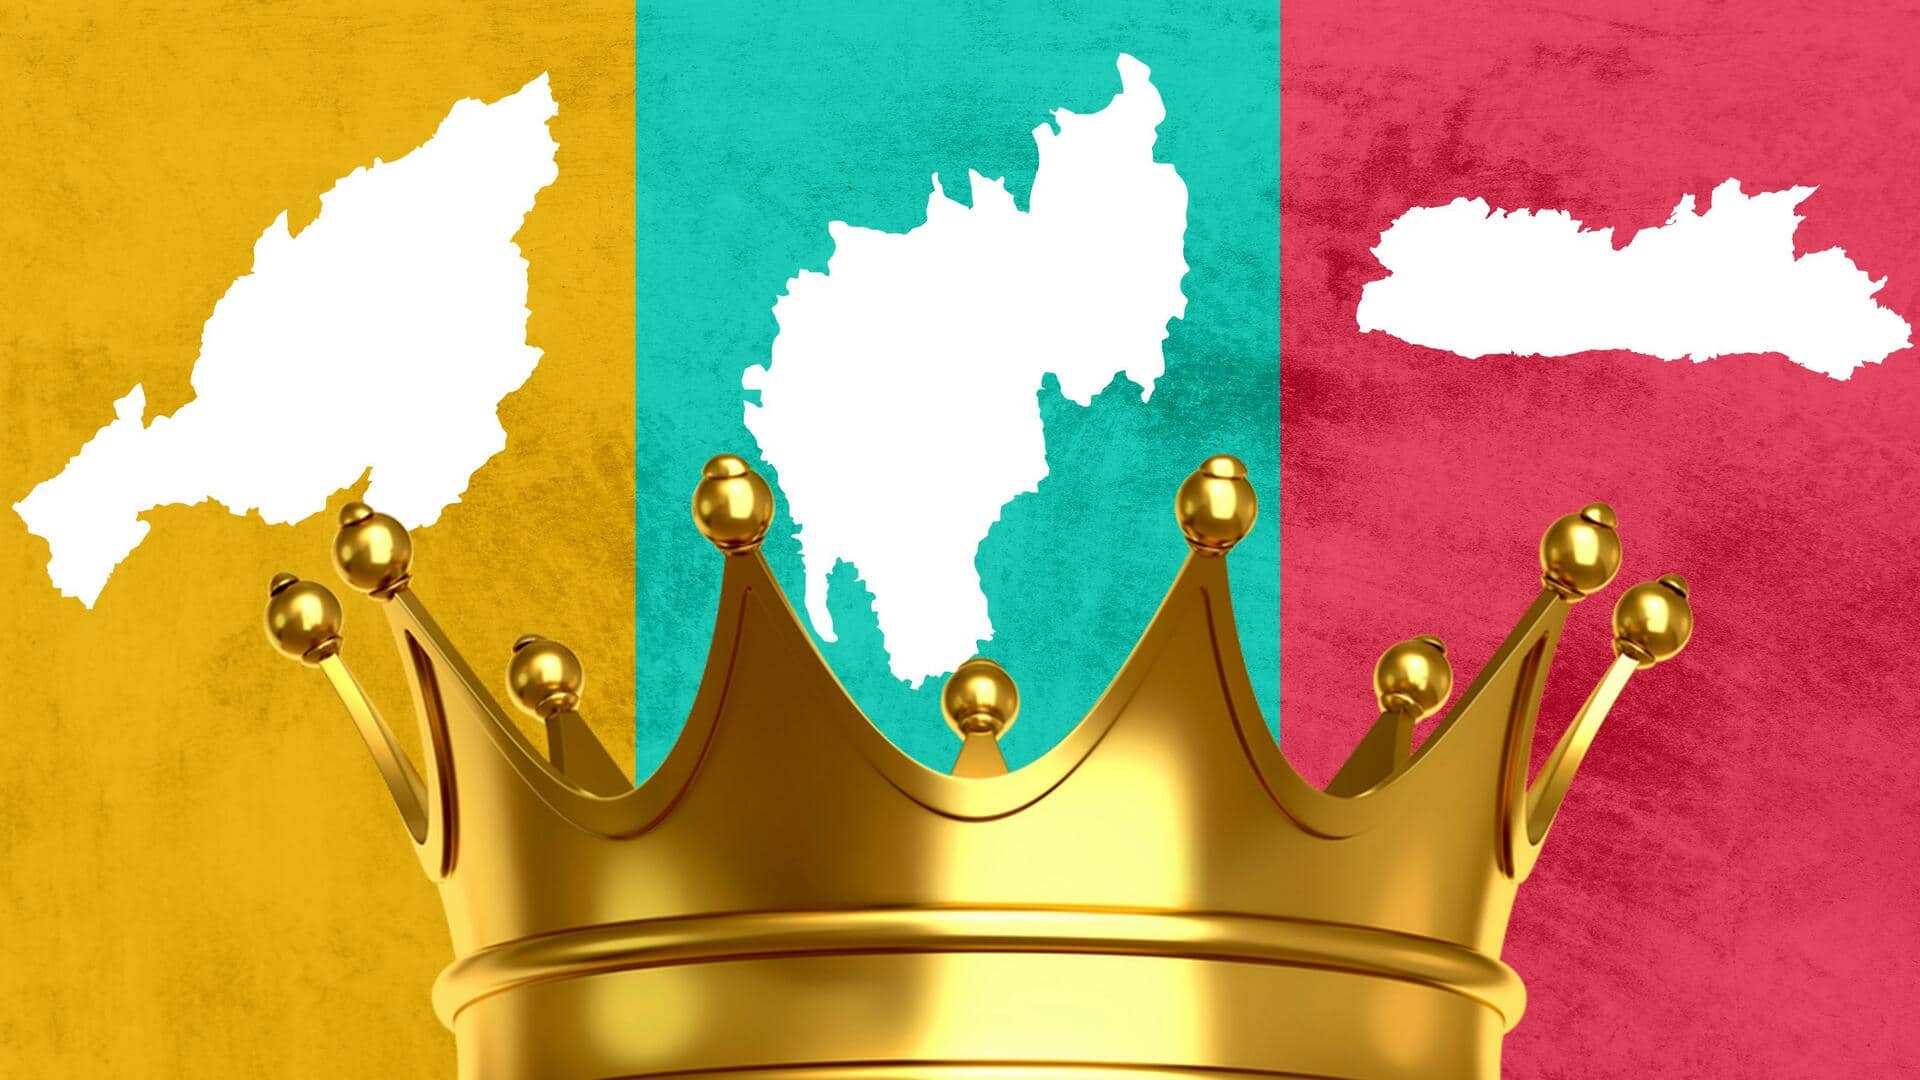 त्रिपुरा, नागालैंड और मिजोरम में सरकार बनाने की कवायद तेज, जानें कहां कौन बनेगा मुख्यमंत्री